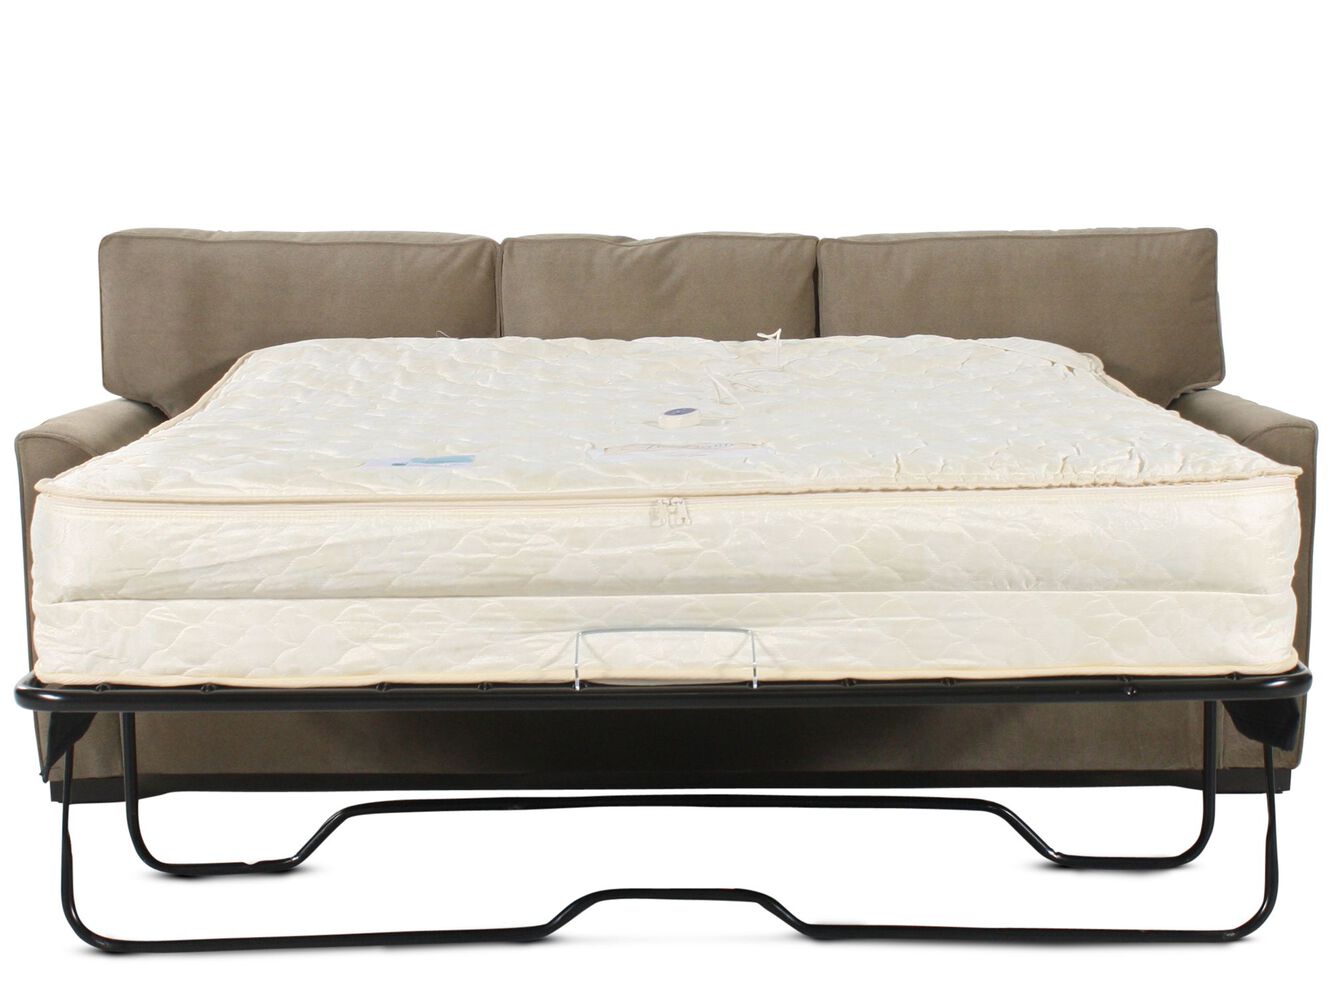 air bed com sofa